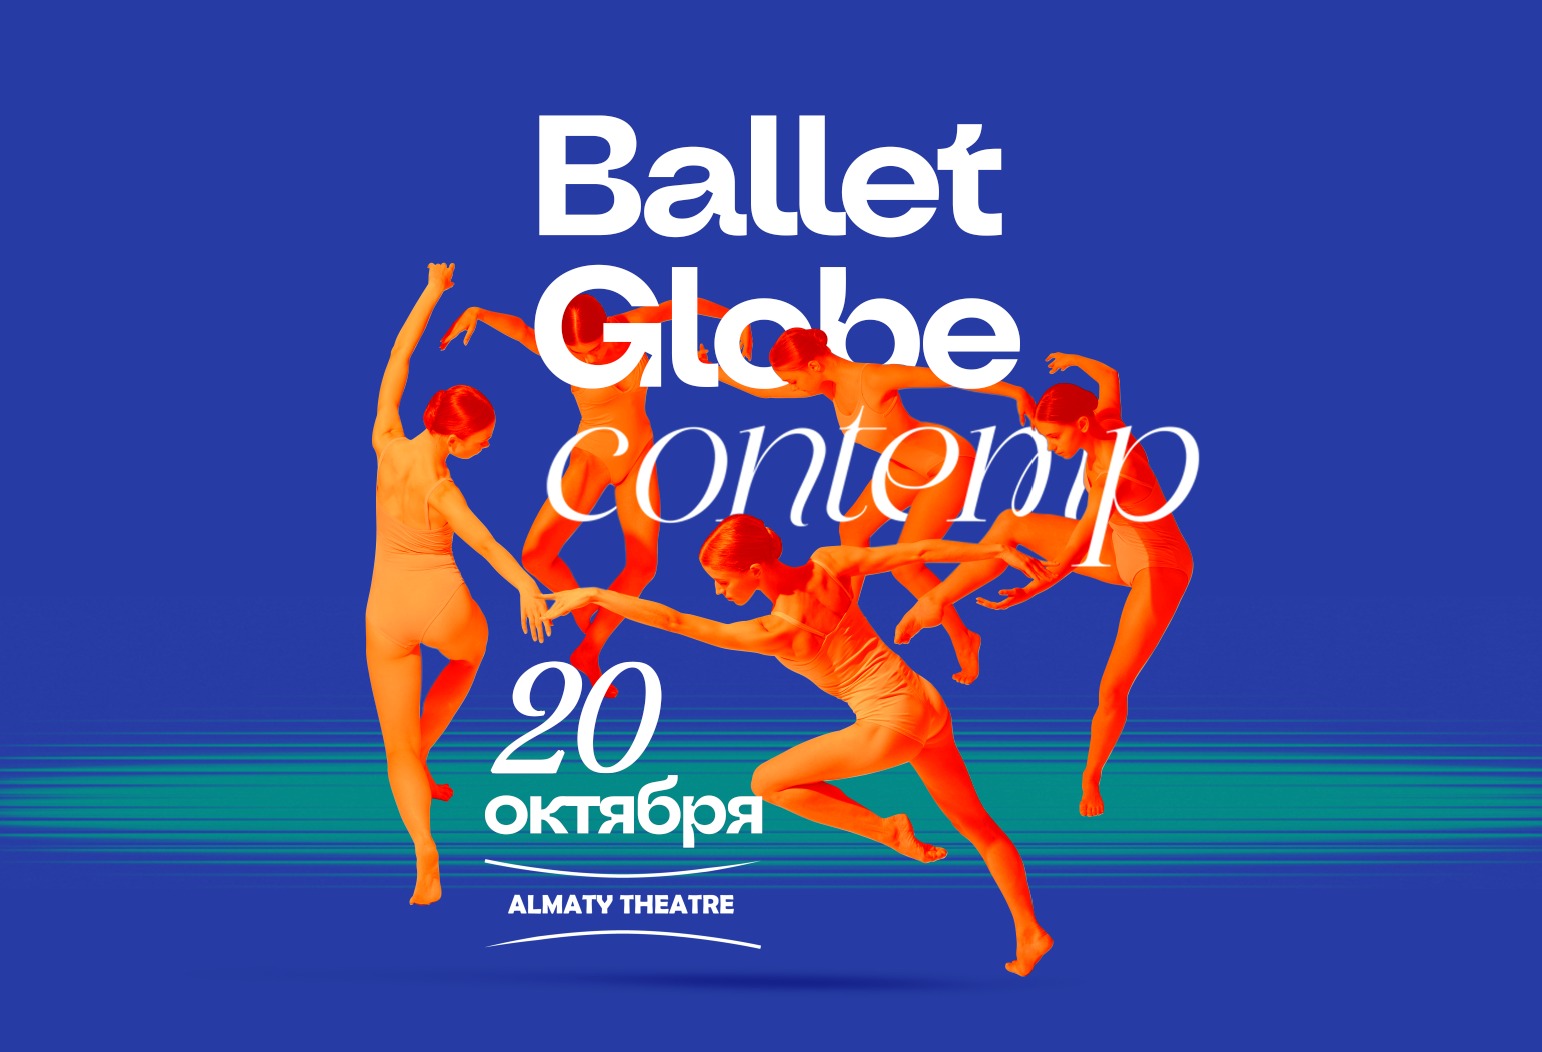 culture almaty theatre ballet globe